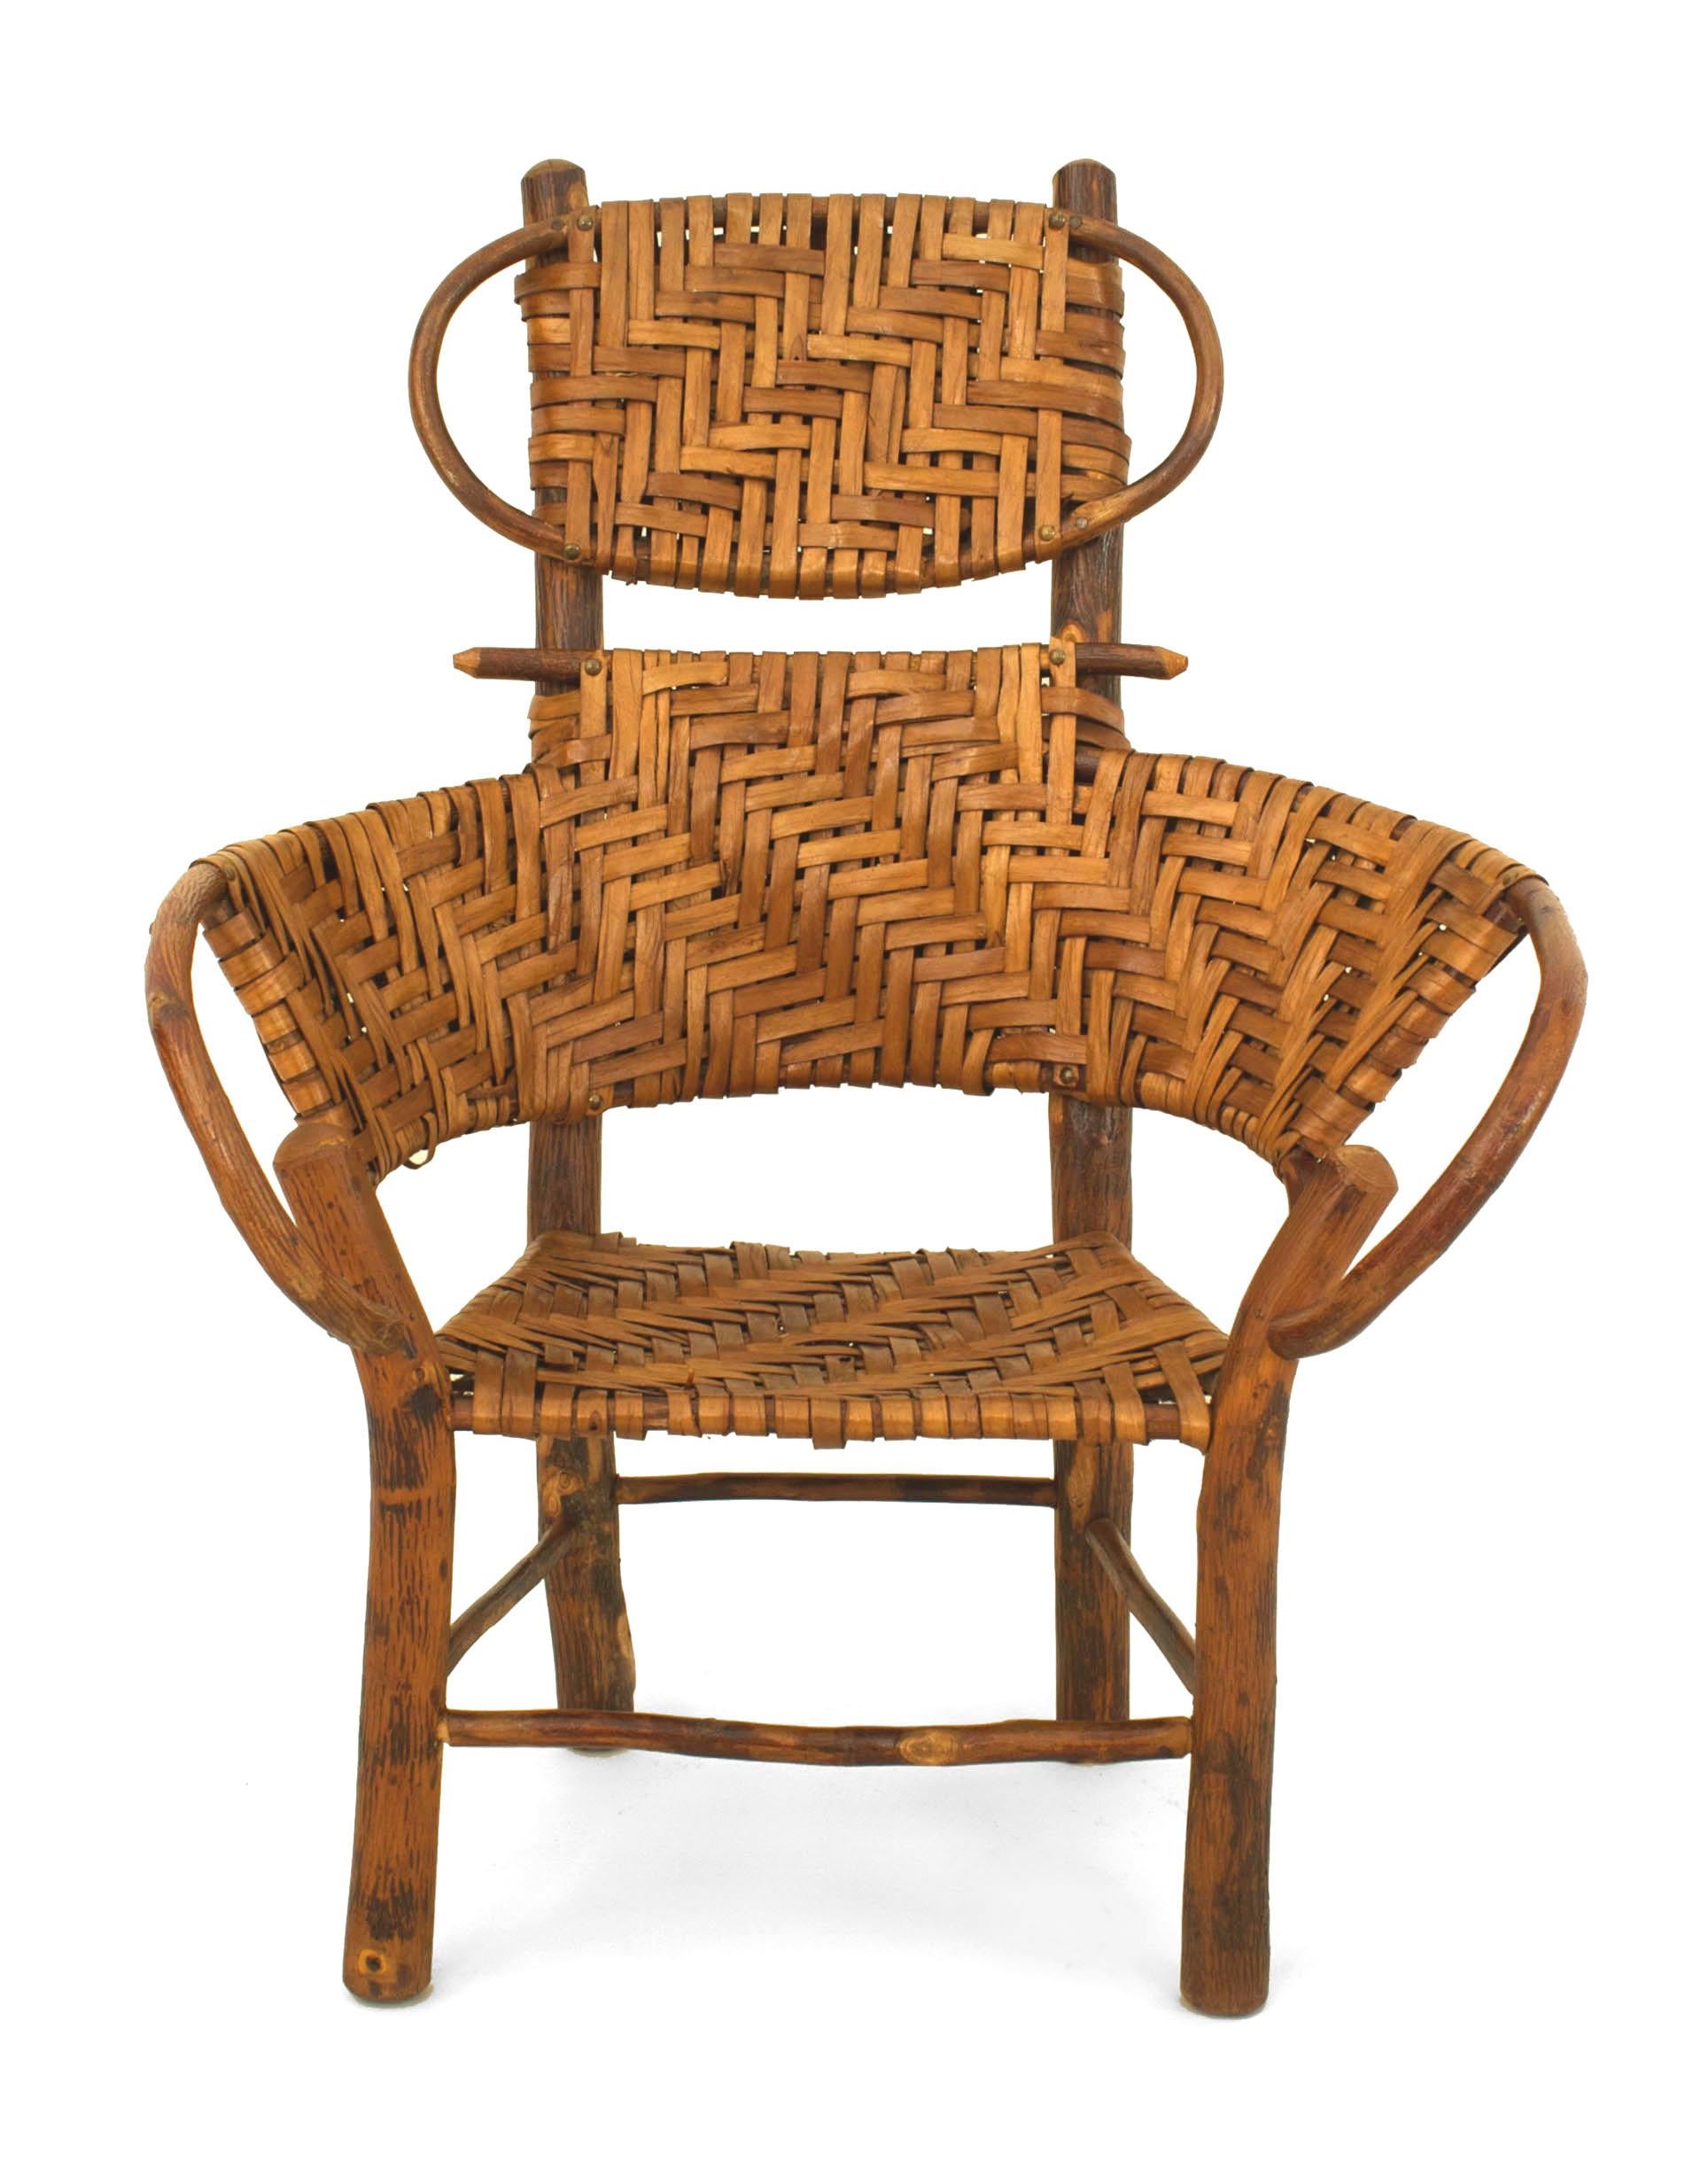 Paar American Rustic Old Hickory Kind hohe Rückenlehne Sessel mit einem gewebten Sitz und Barrel zurück Design mit einer Kopfstütze und Kastenform Bahre
